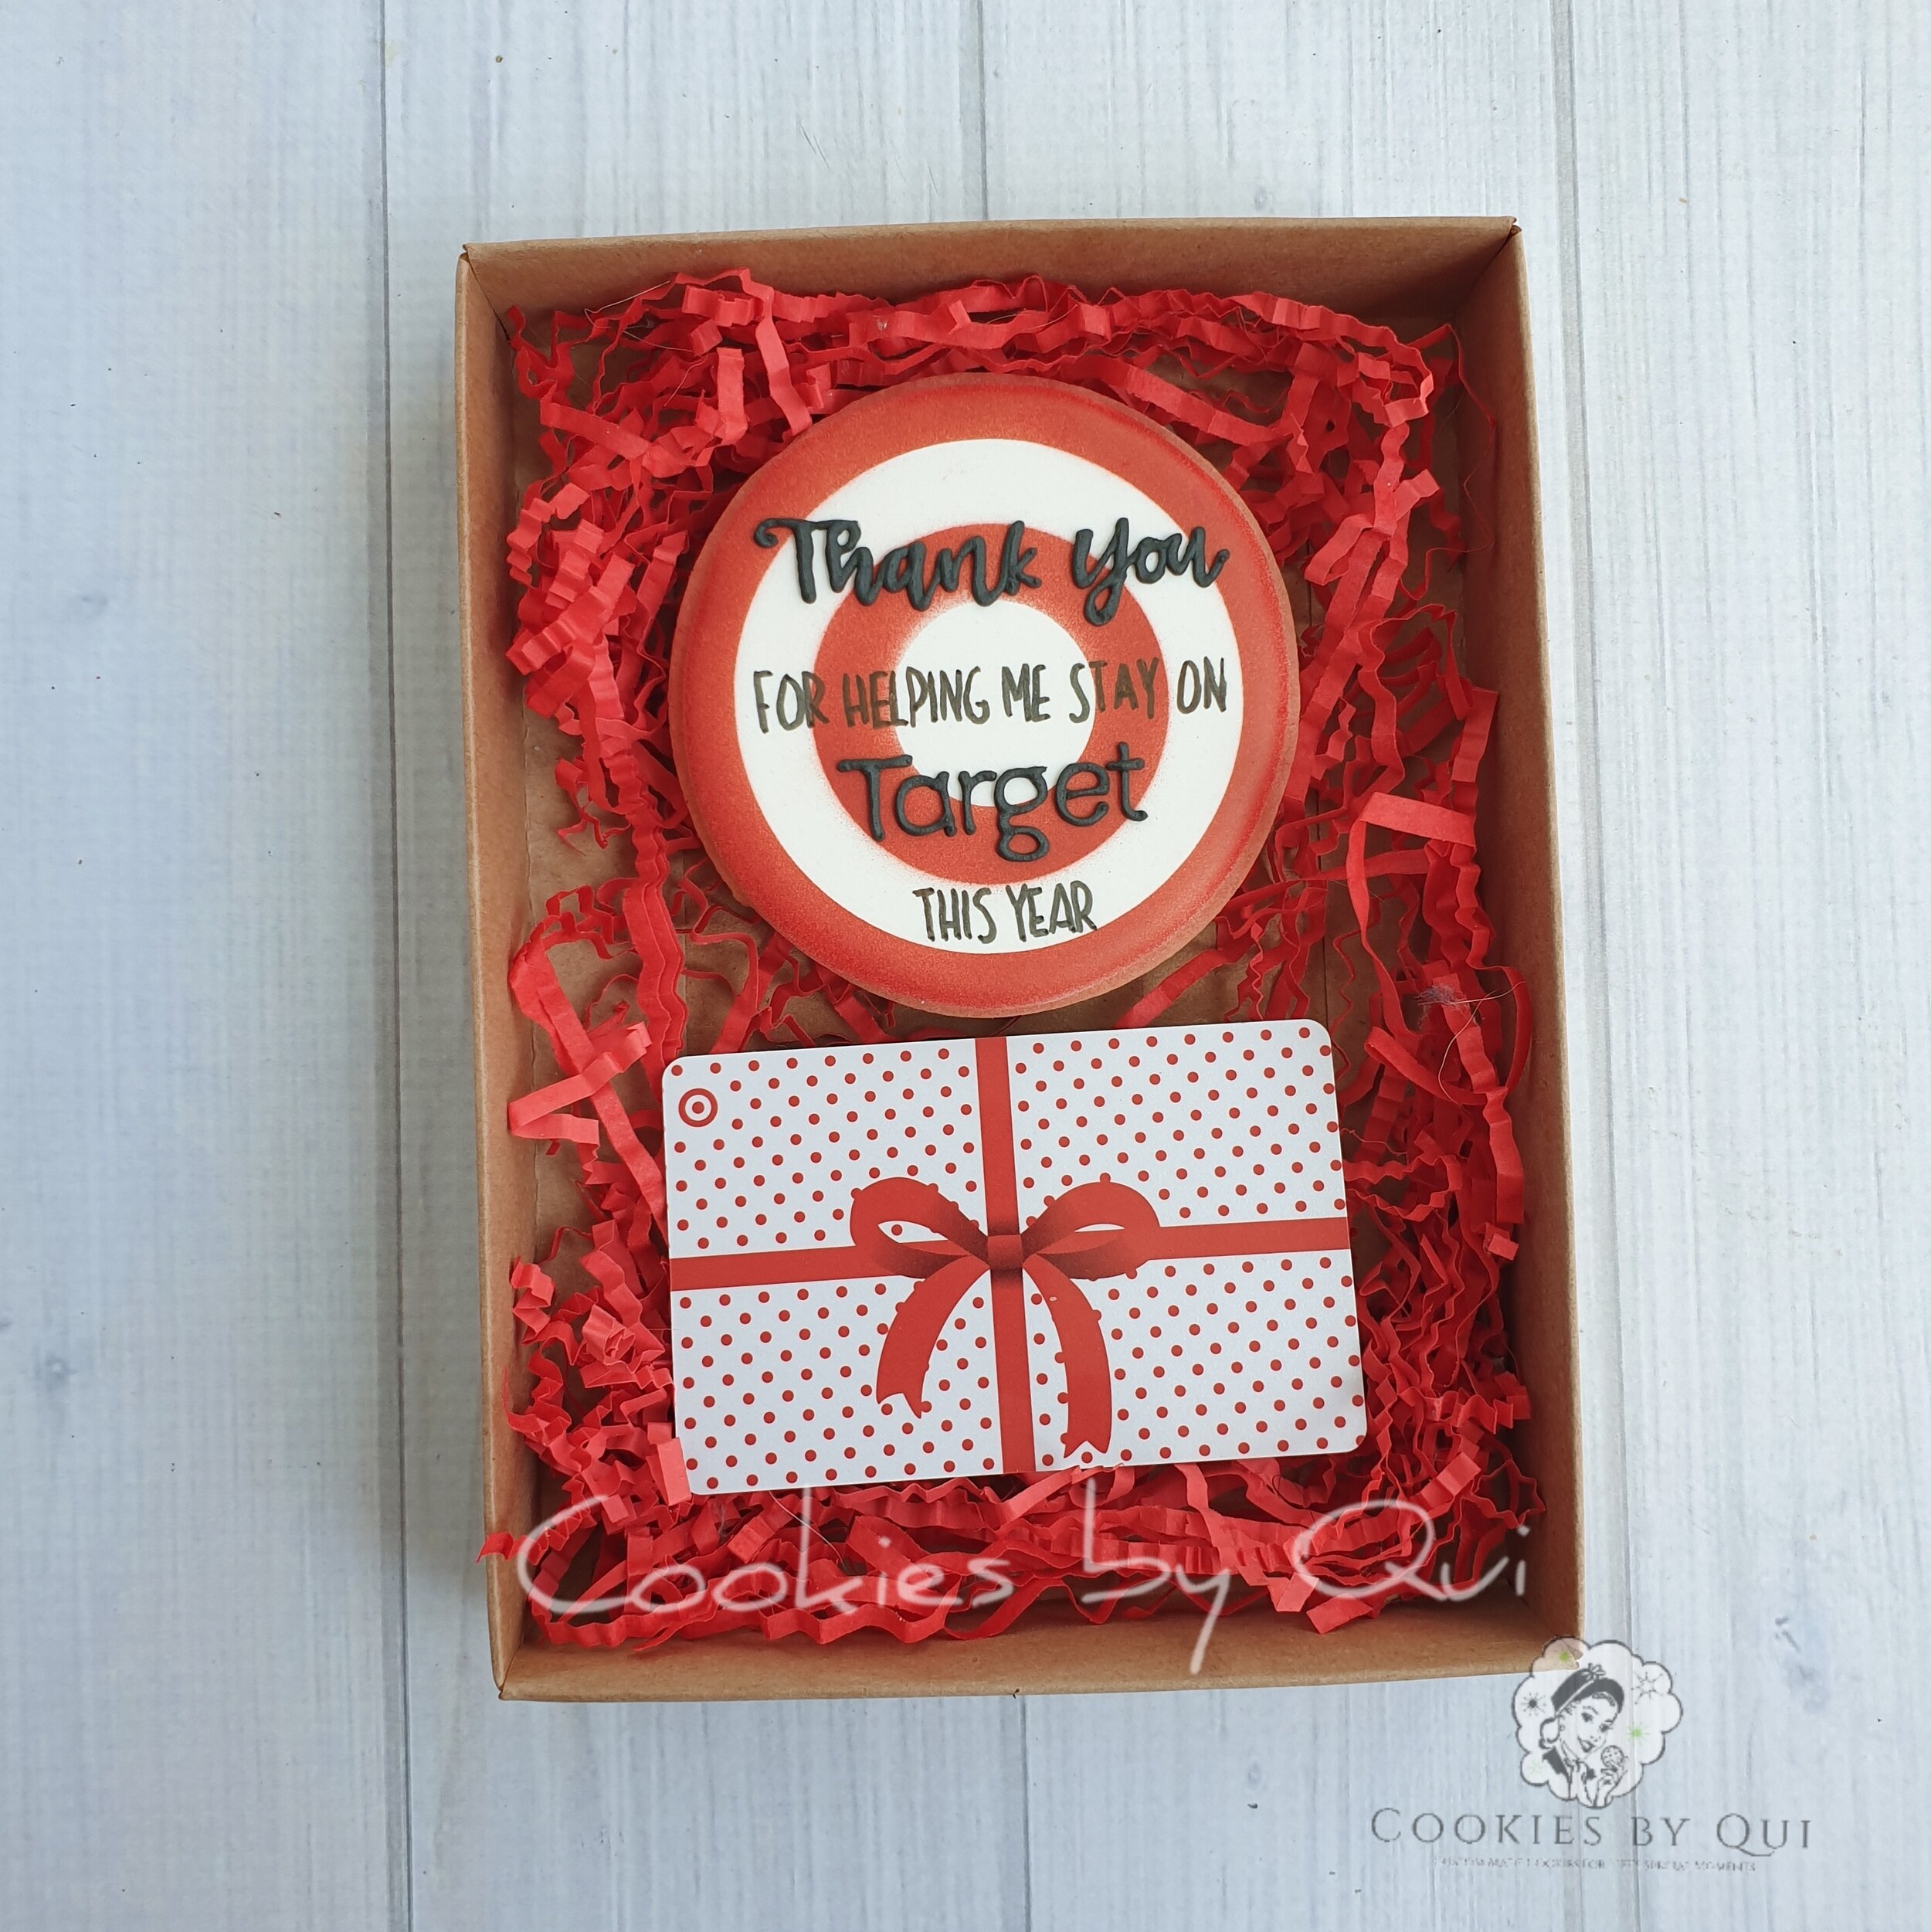 Target Cookie Gift Pack - Cookies by Qui Geelong.jpg